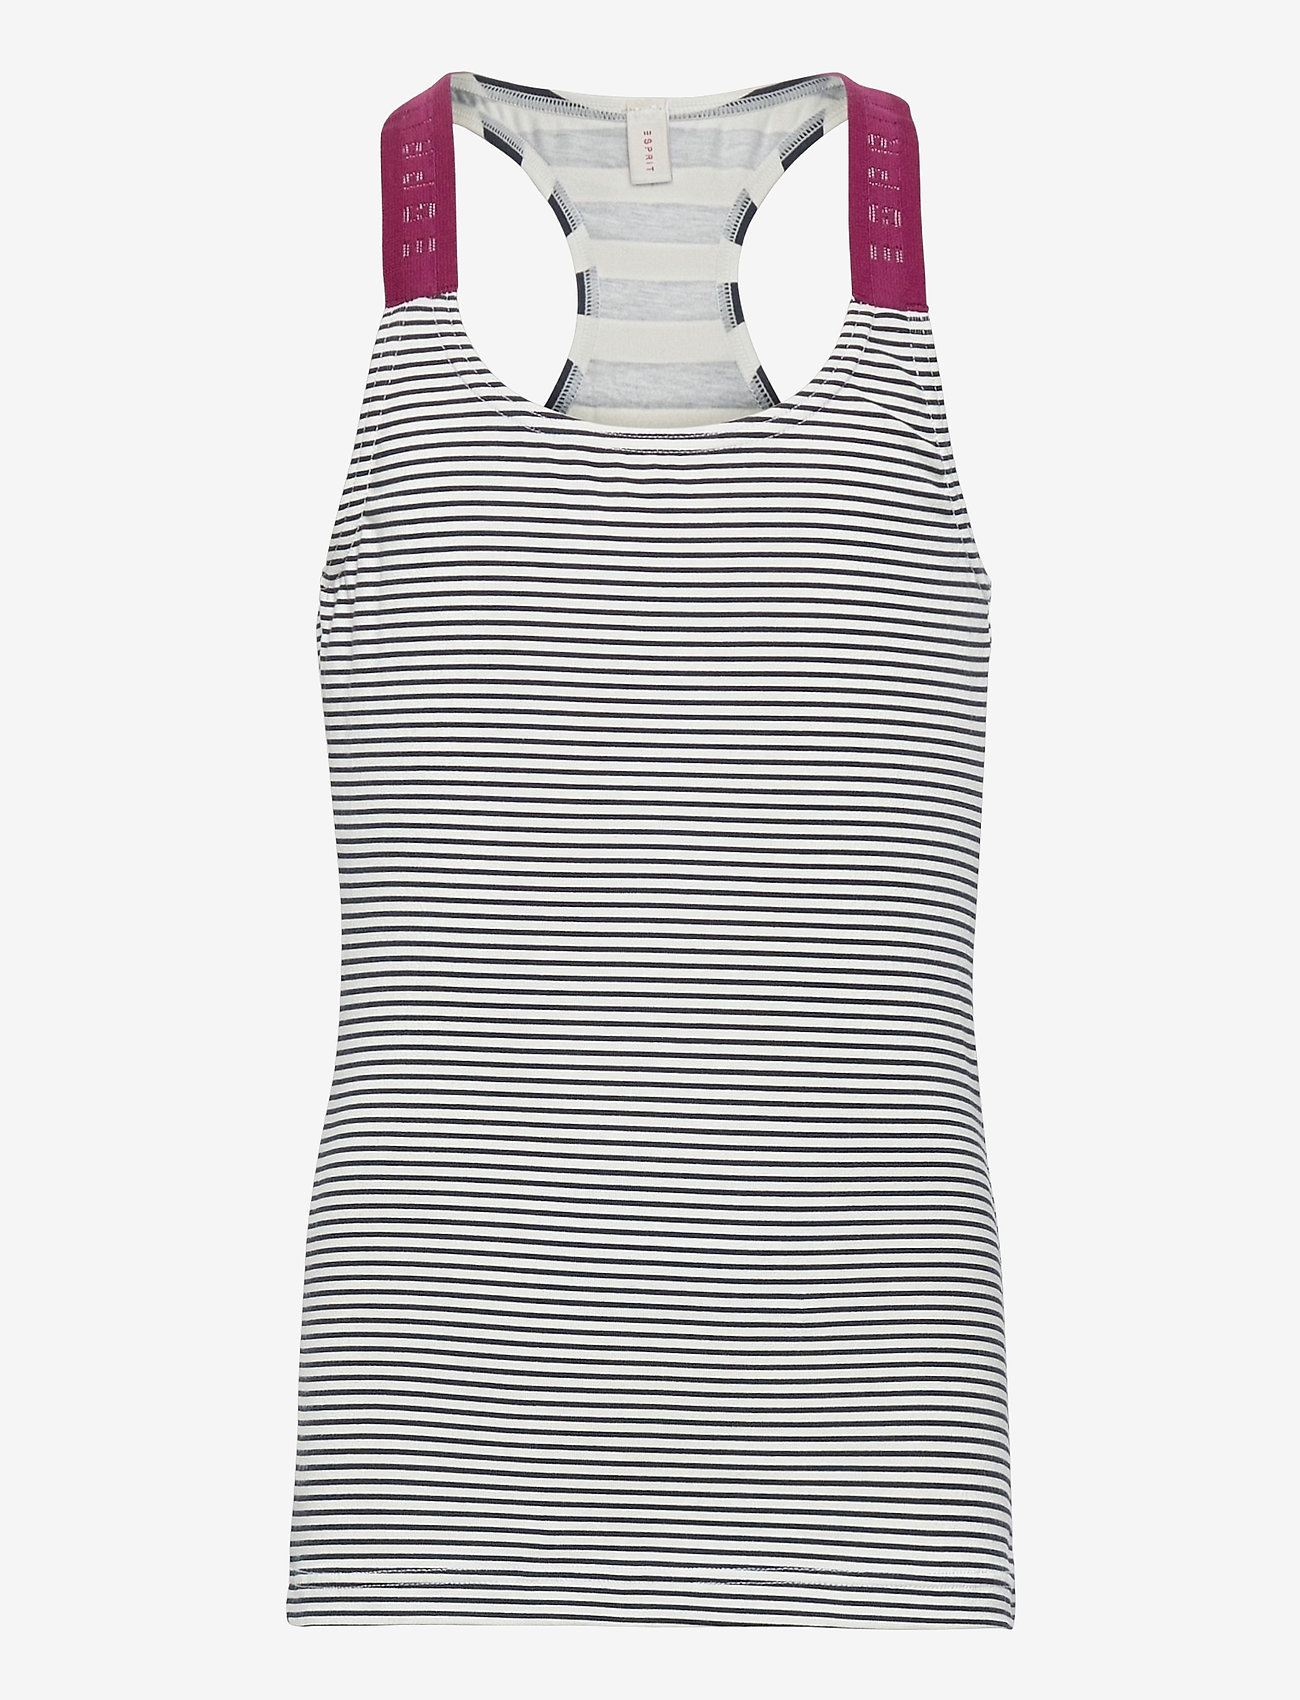 Esprit Bodywear Kids - Striped top made of stretch cotton - bez rękawów - navy - 0